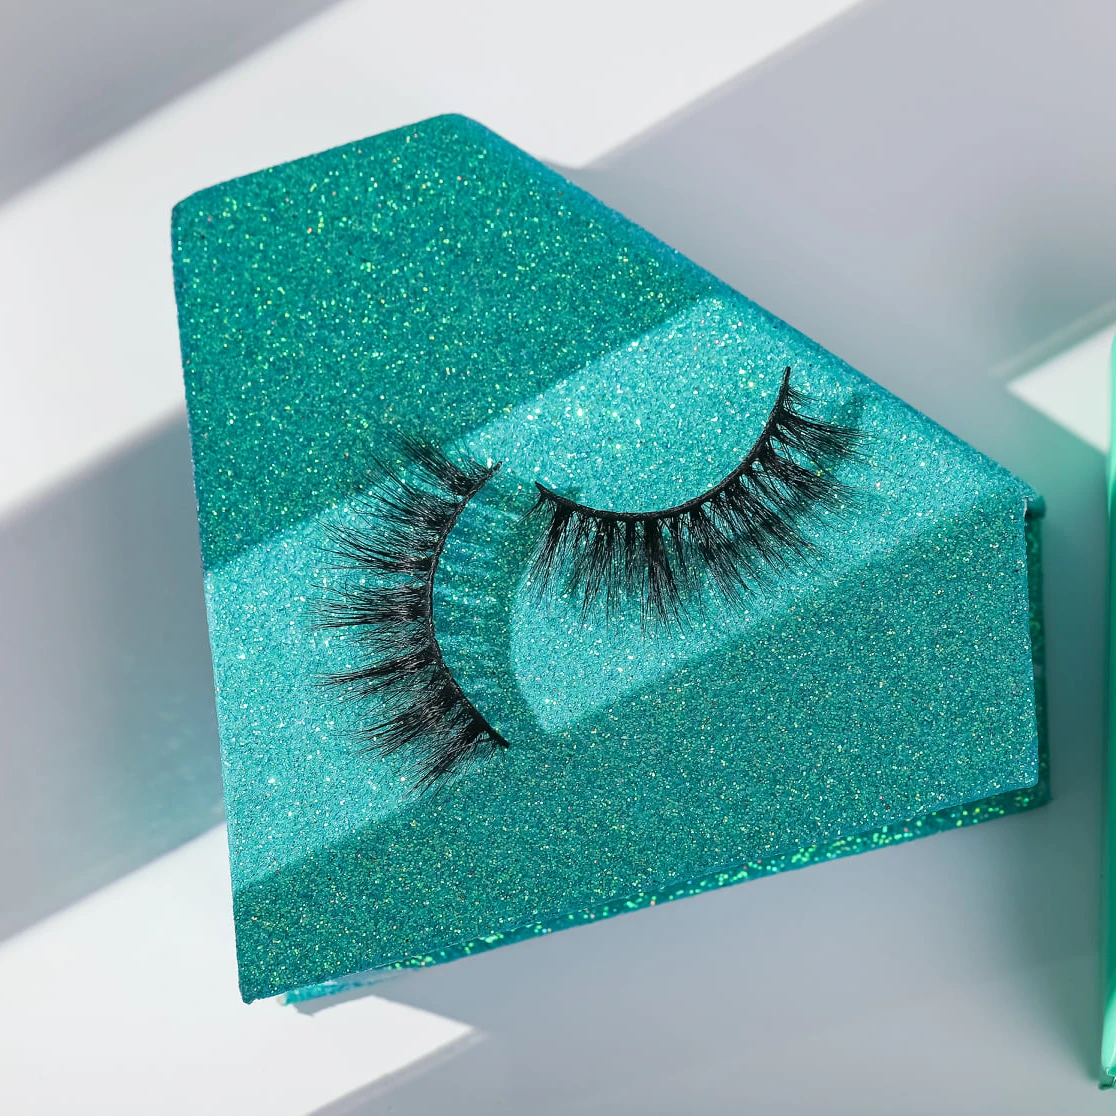 

Wholesale dramatic 25mm mink eyelash vendor diamonds customized boxes packaging cases fluffy 5d mink eyelashes